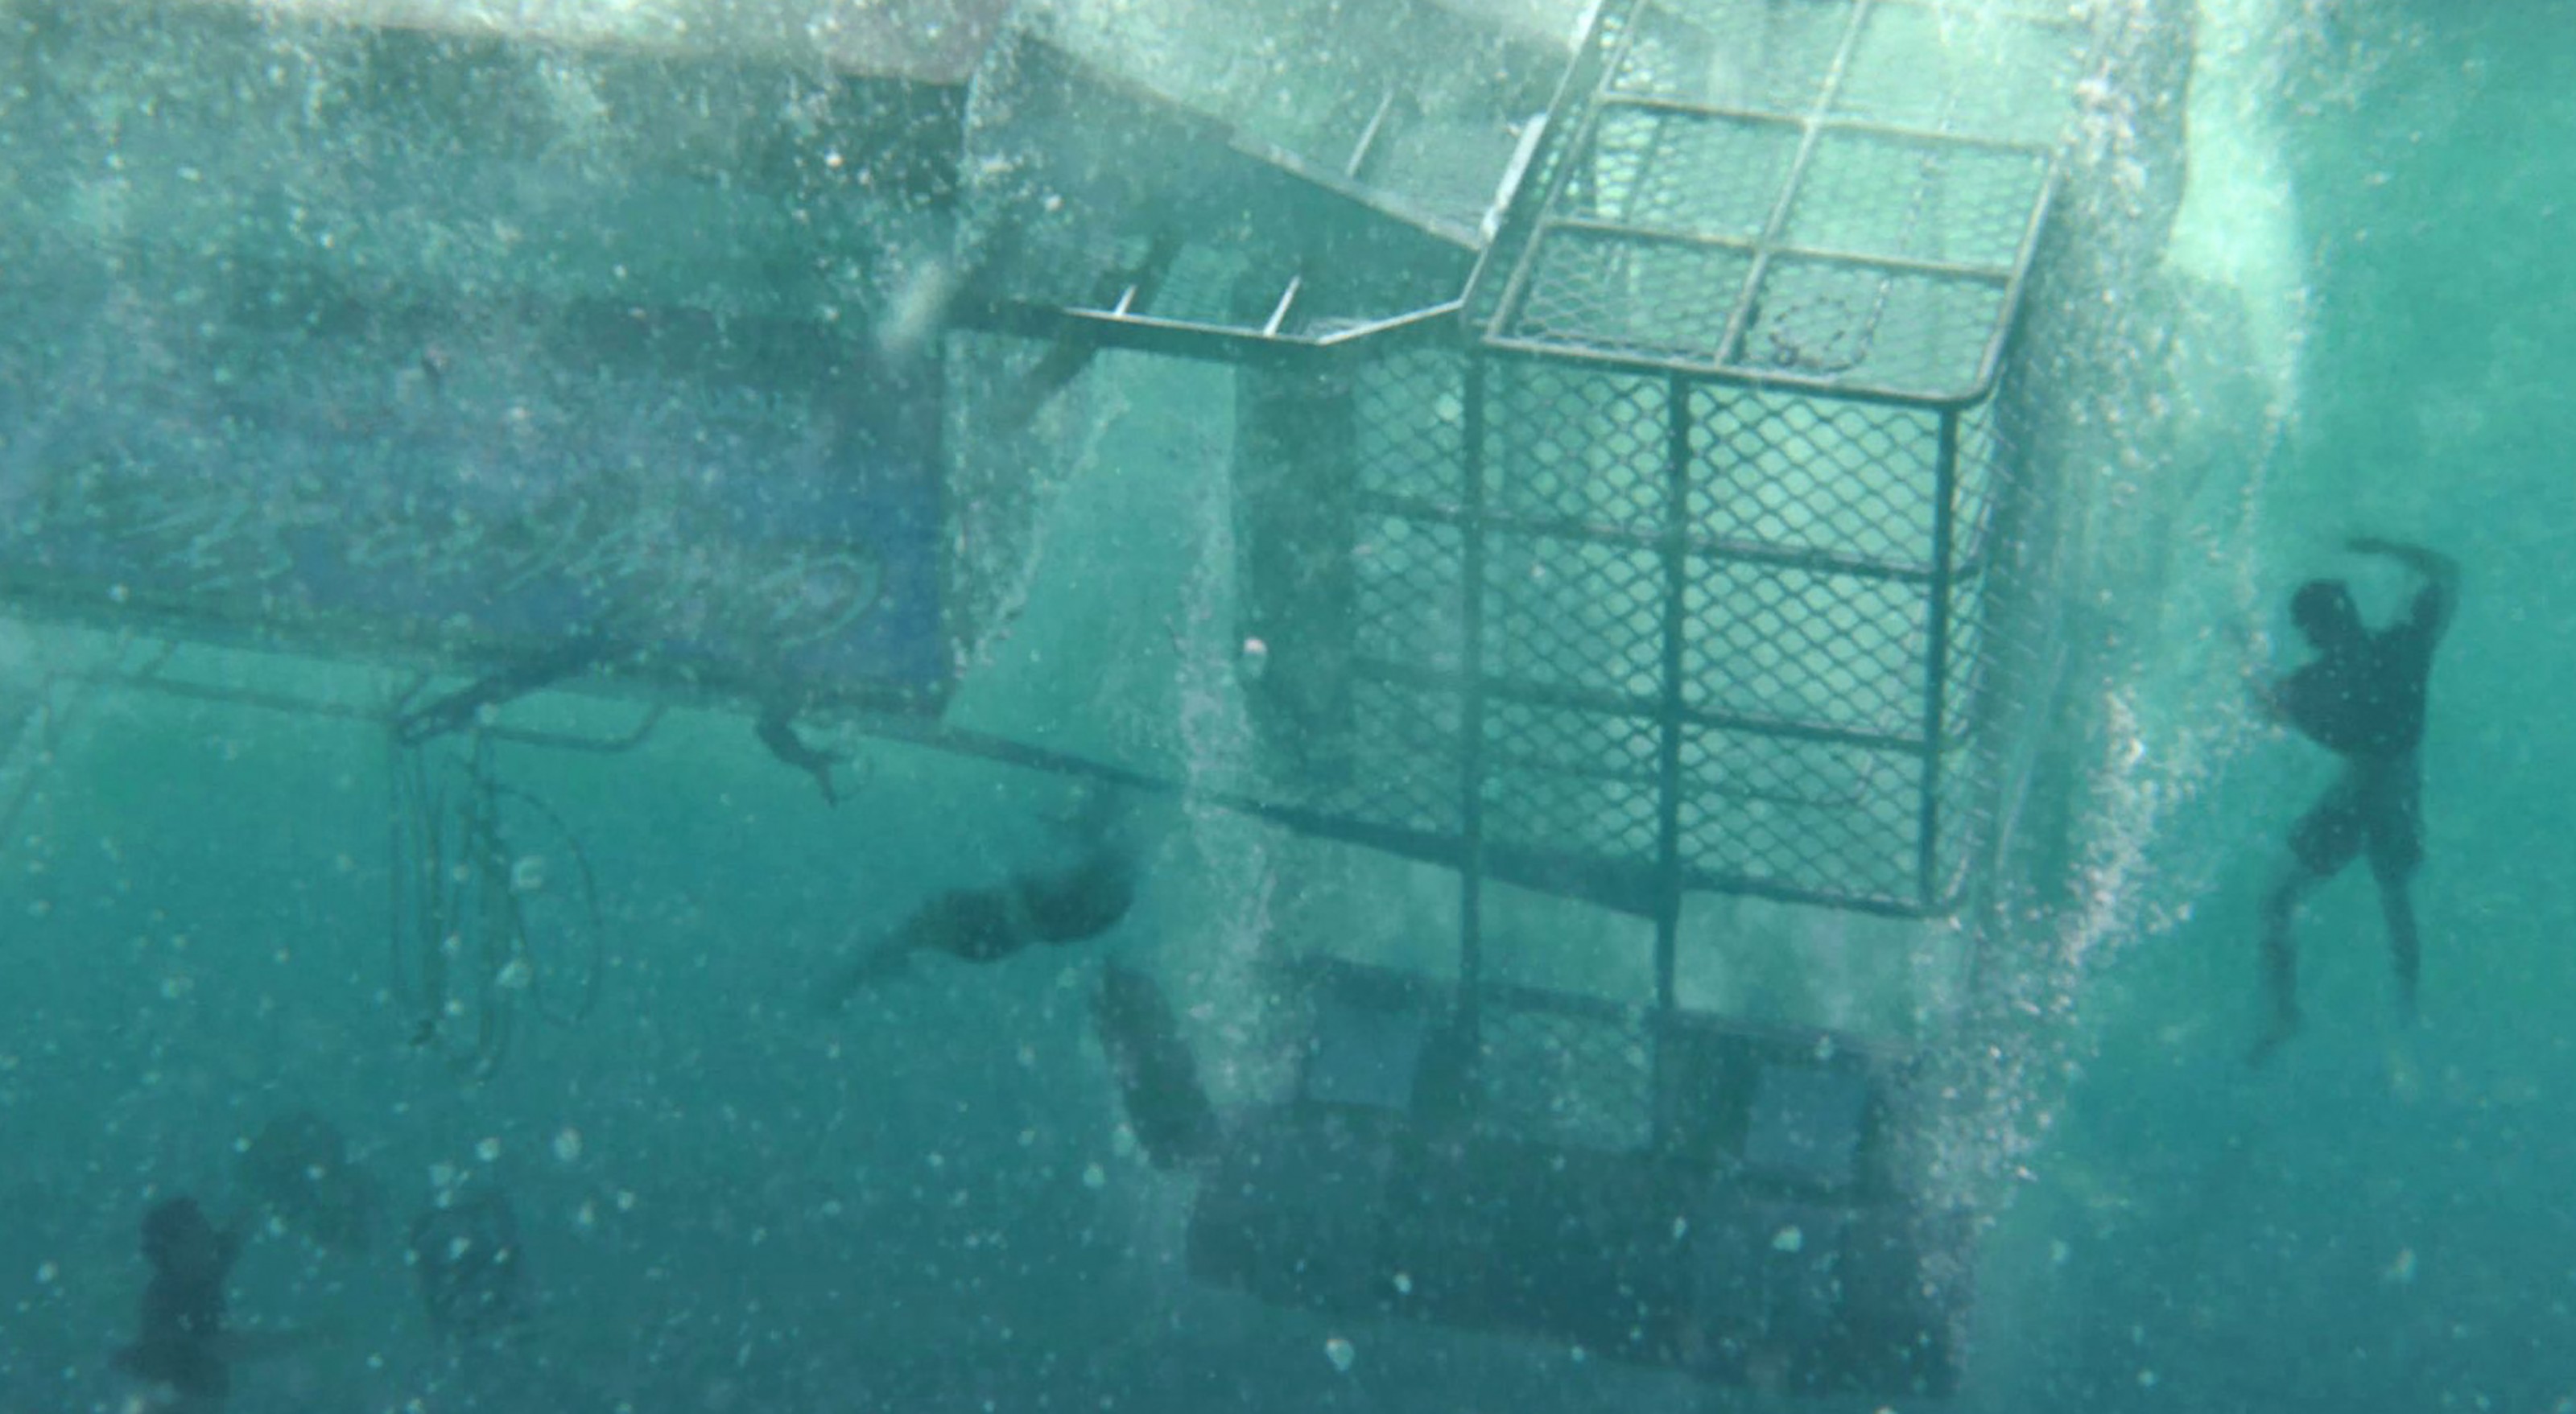 Над глубиной. Над глубиной: хроника выживания фильм 2017. Open Water 3 Cage Dive. Над глубиной: хроника выживания фильм 2017 кадры. Фильмы про выживание под водой на глубине.